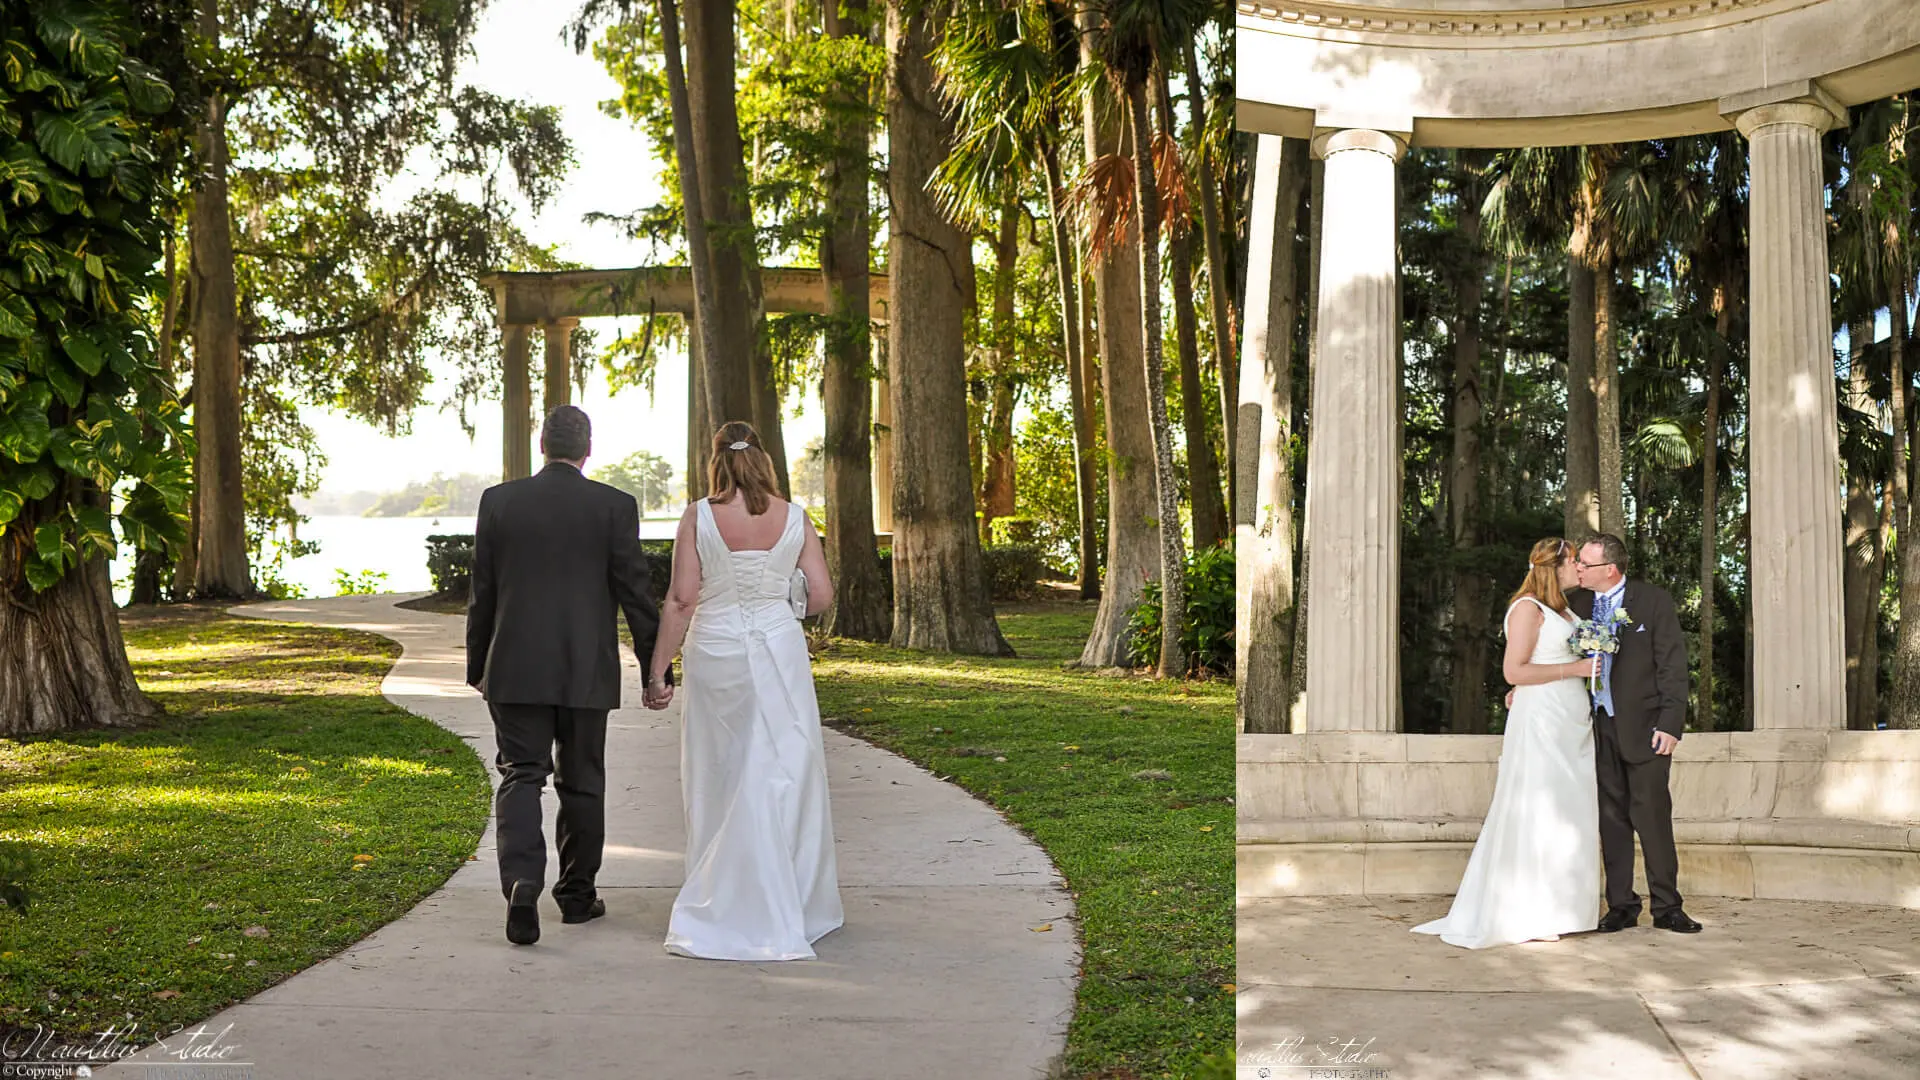 Boda en el jardín de Florida, foto de recién casados ​​camino a la boda